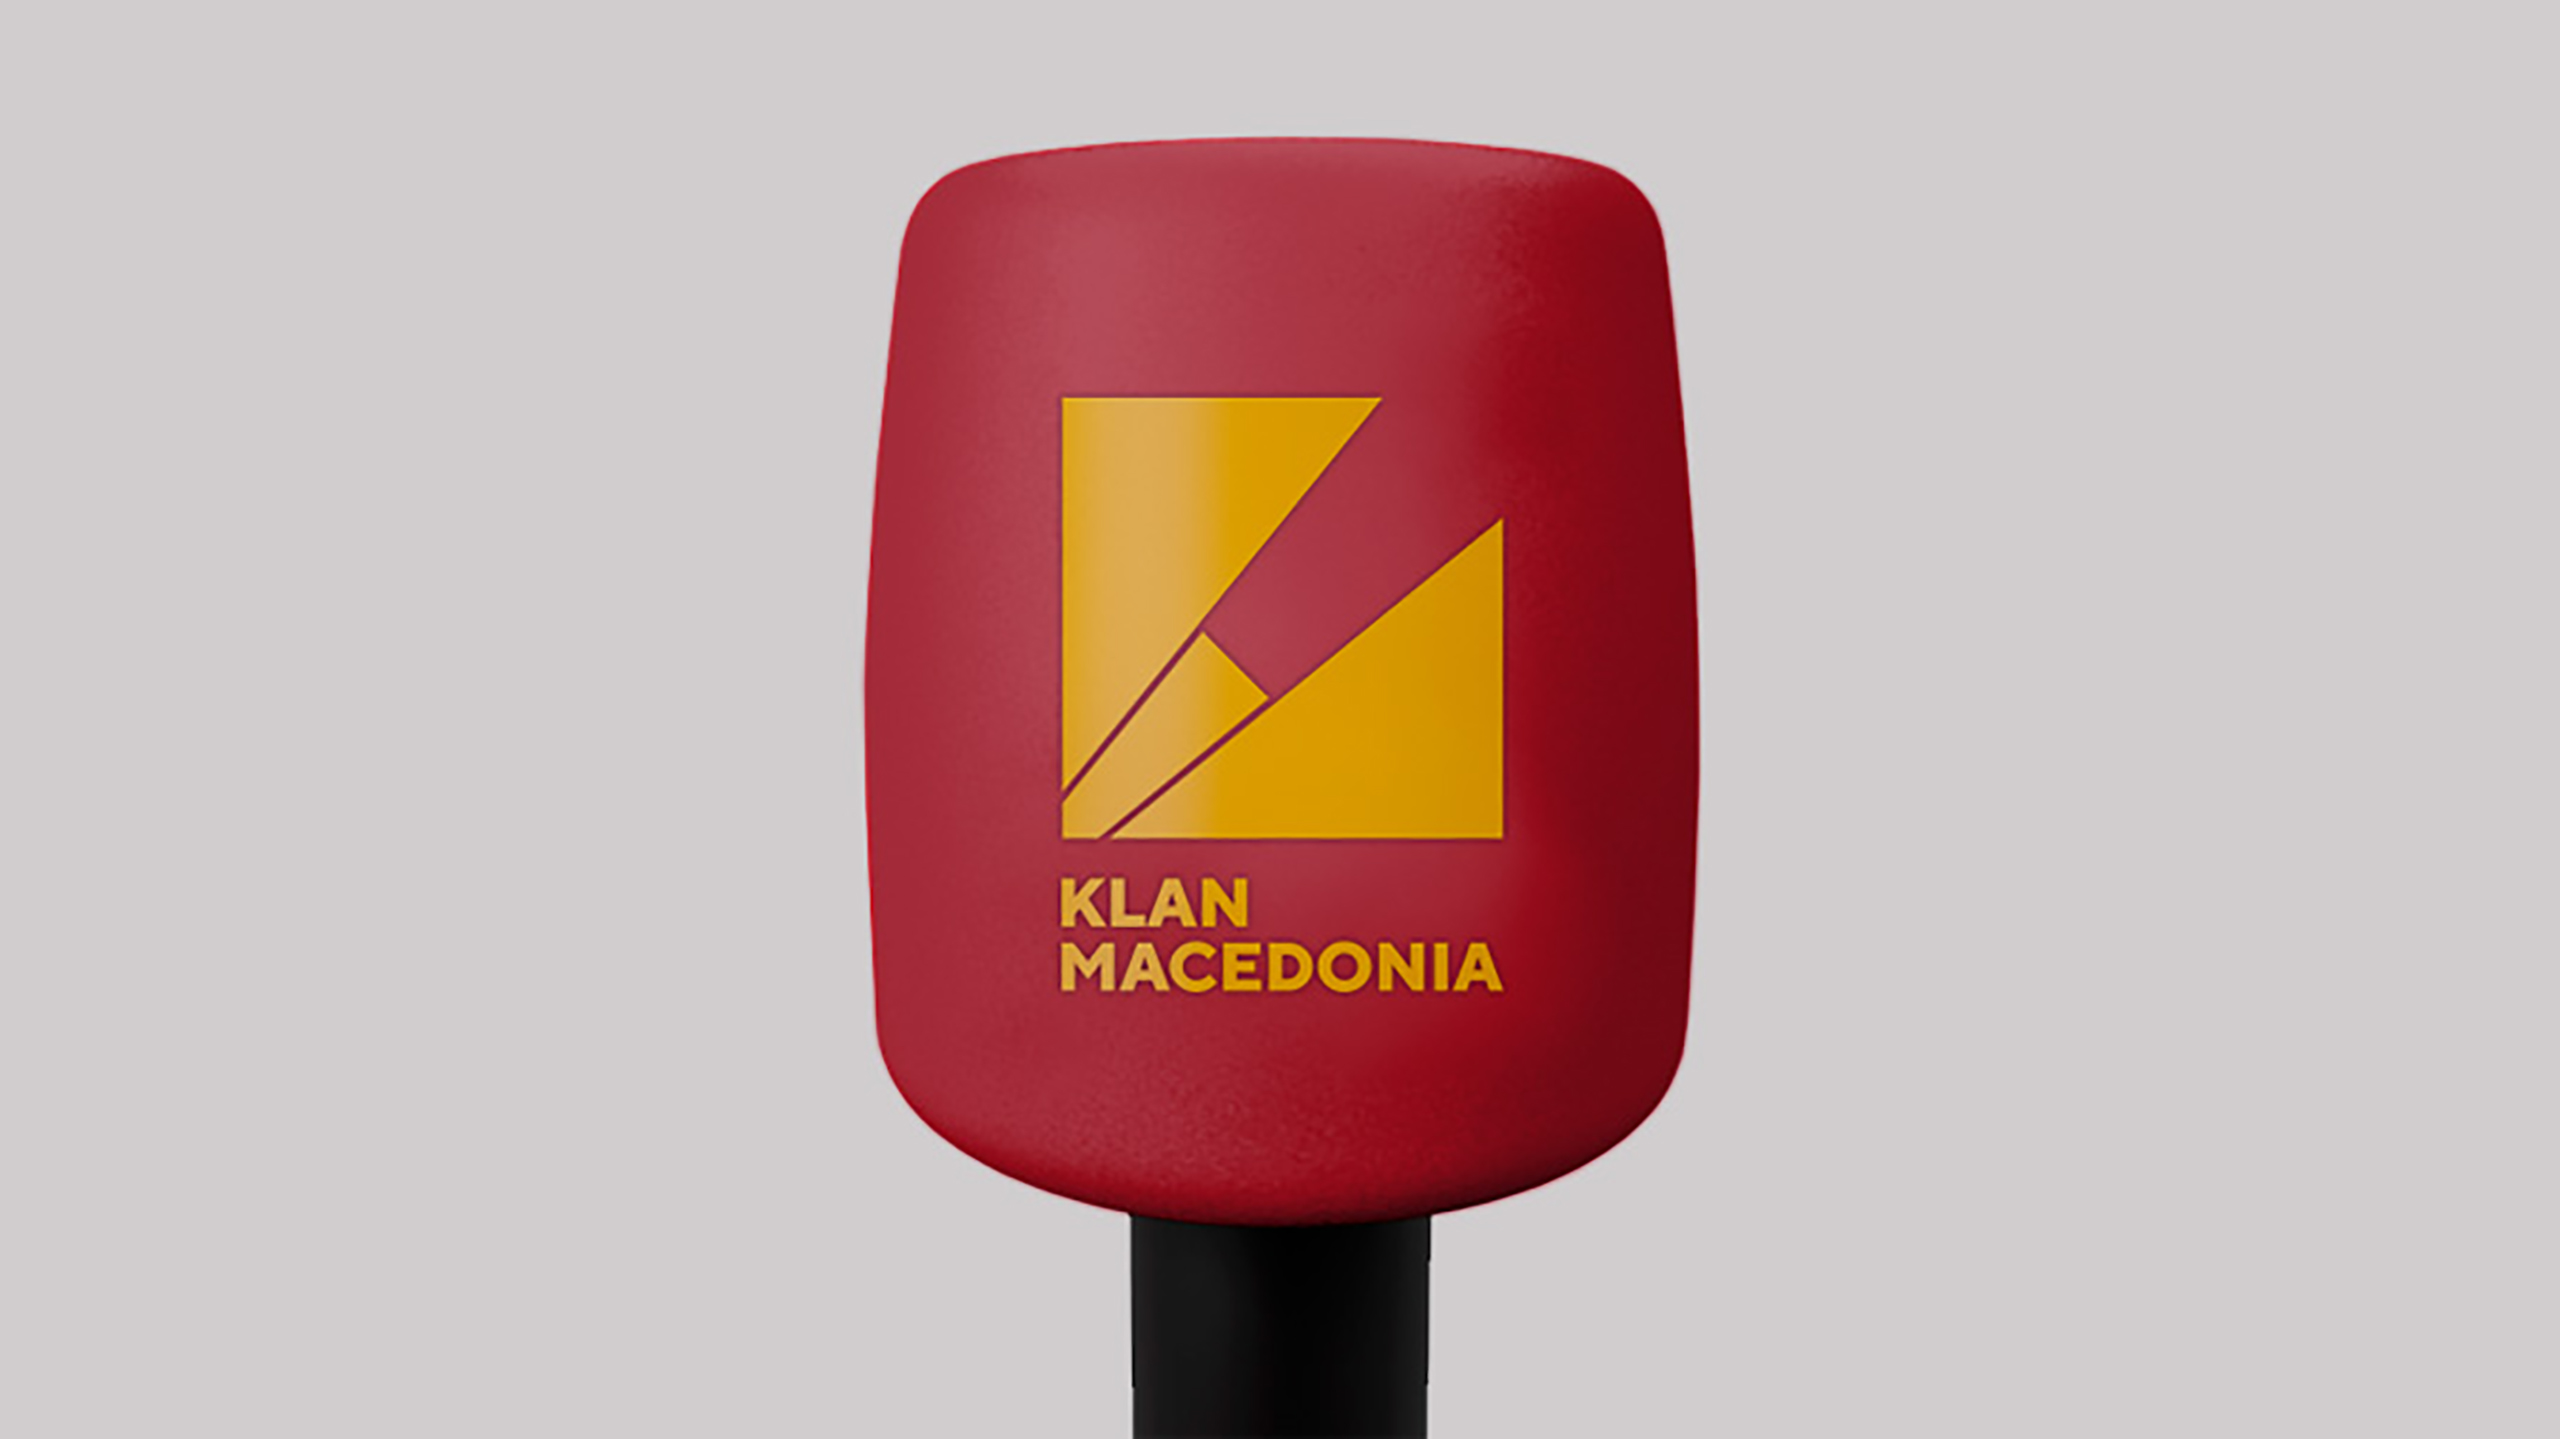 Klan Macedonia Article, Vatra Agency / Founder & CEO Gerton Bejo